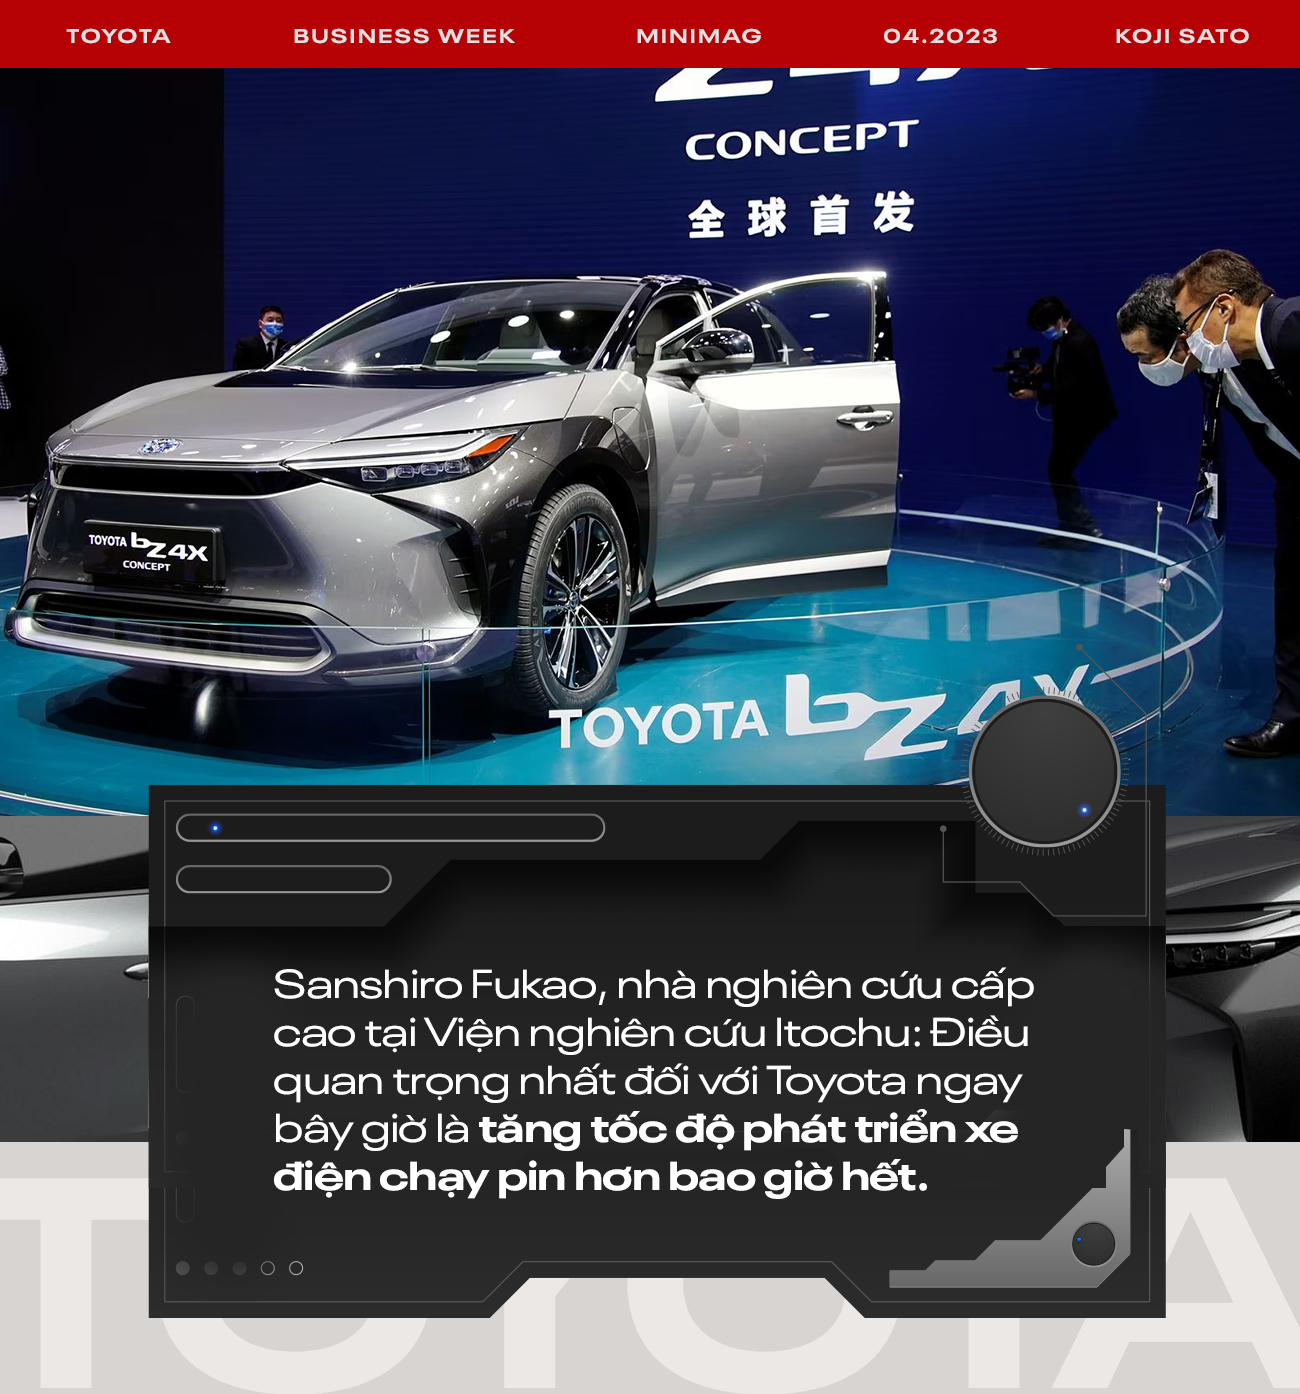 Toyota đứng trước cuộc cách mạng ‘trăm năm có một’: Phải quên hết hào quang trong quá khứ đề bắt đầu lại, tương lai ‘sống hay chết’ phụ thuộc hoàn toàn vào xe điện - Ảnh 2.